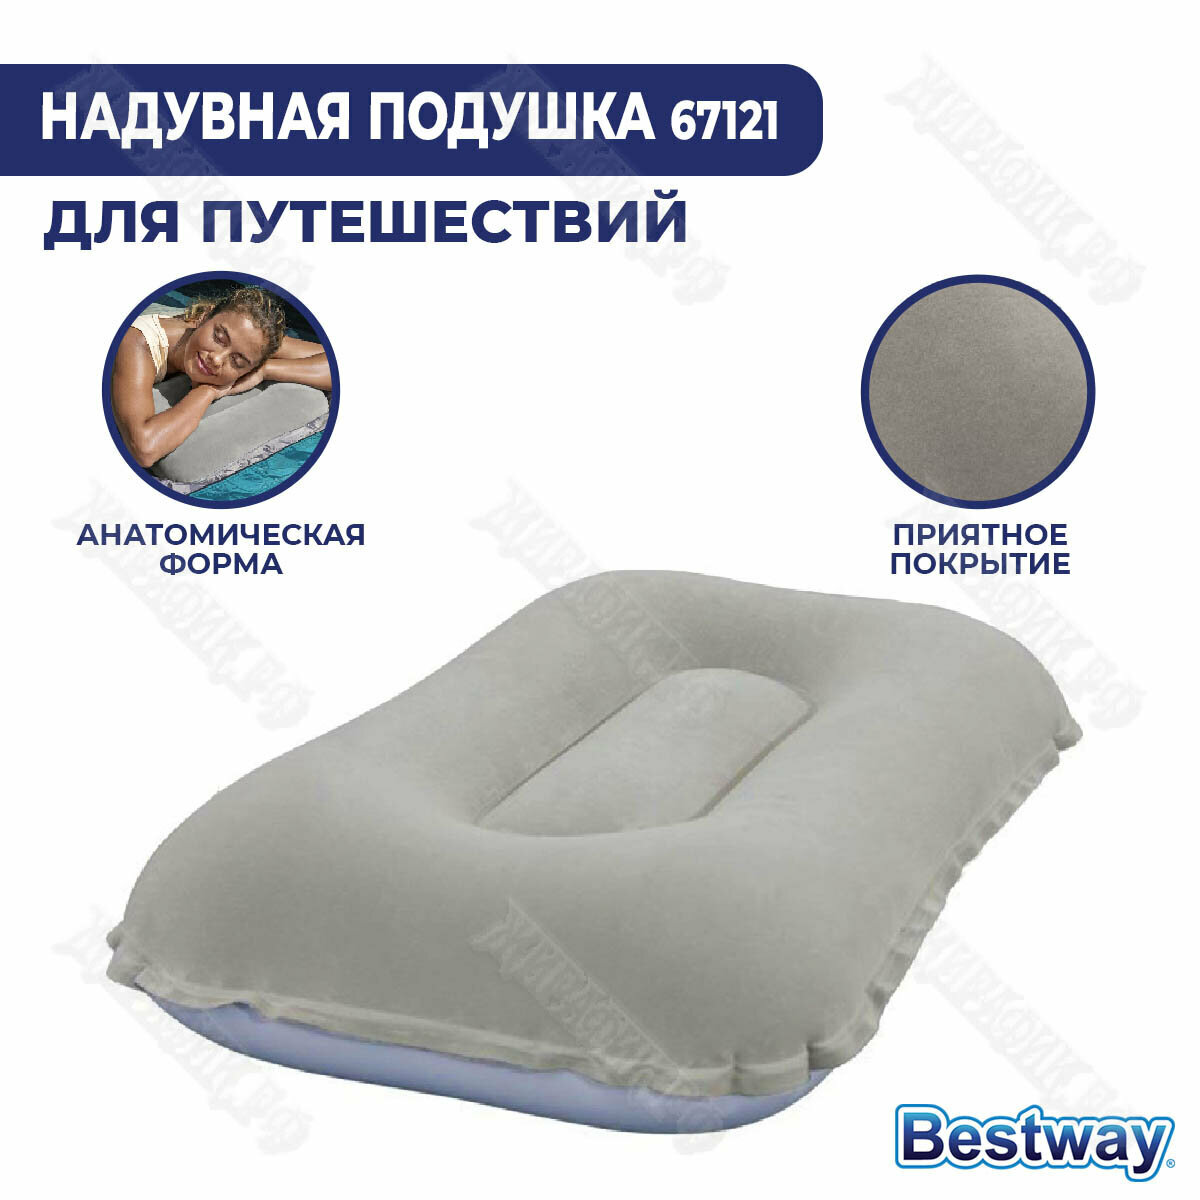 Надувная подушка Bestway 67121